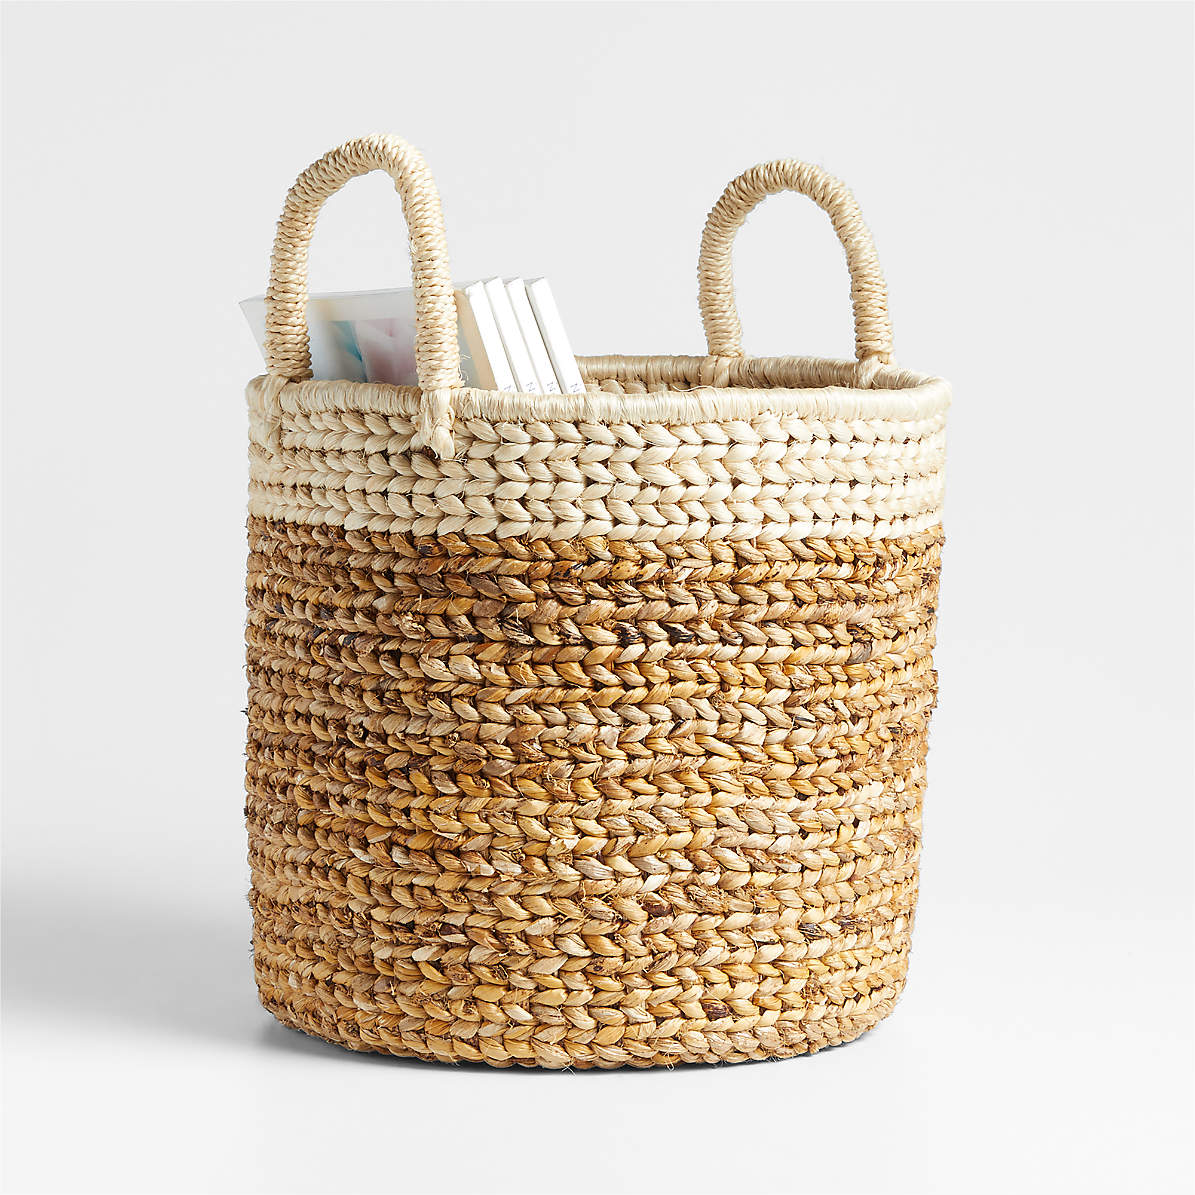 Vonne Small Square Decorative Basket